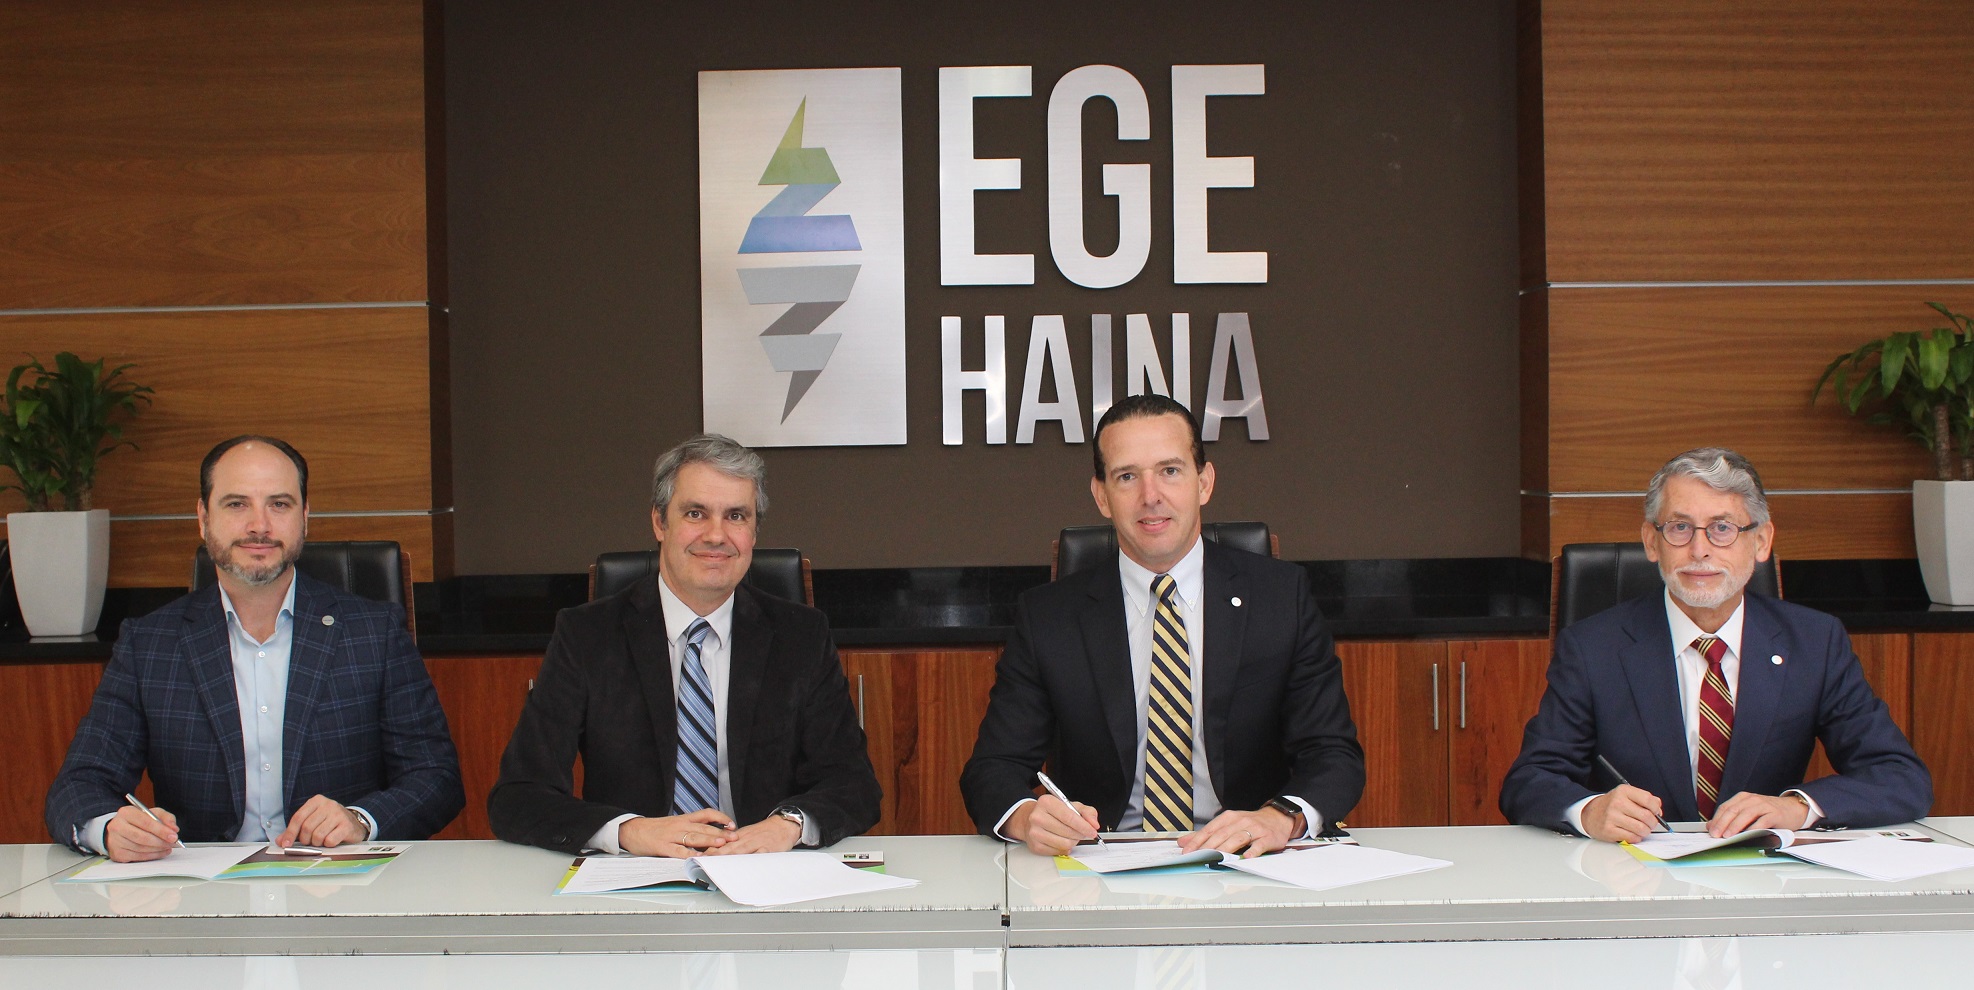 EGE Haina y Falcondo firman contrato de compra y venta de energía renovable